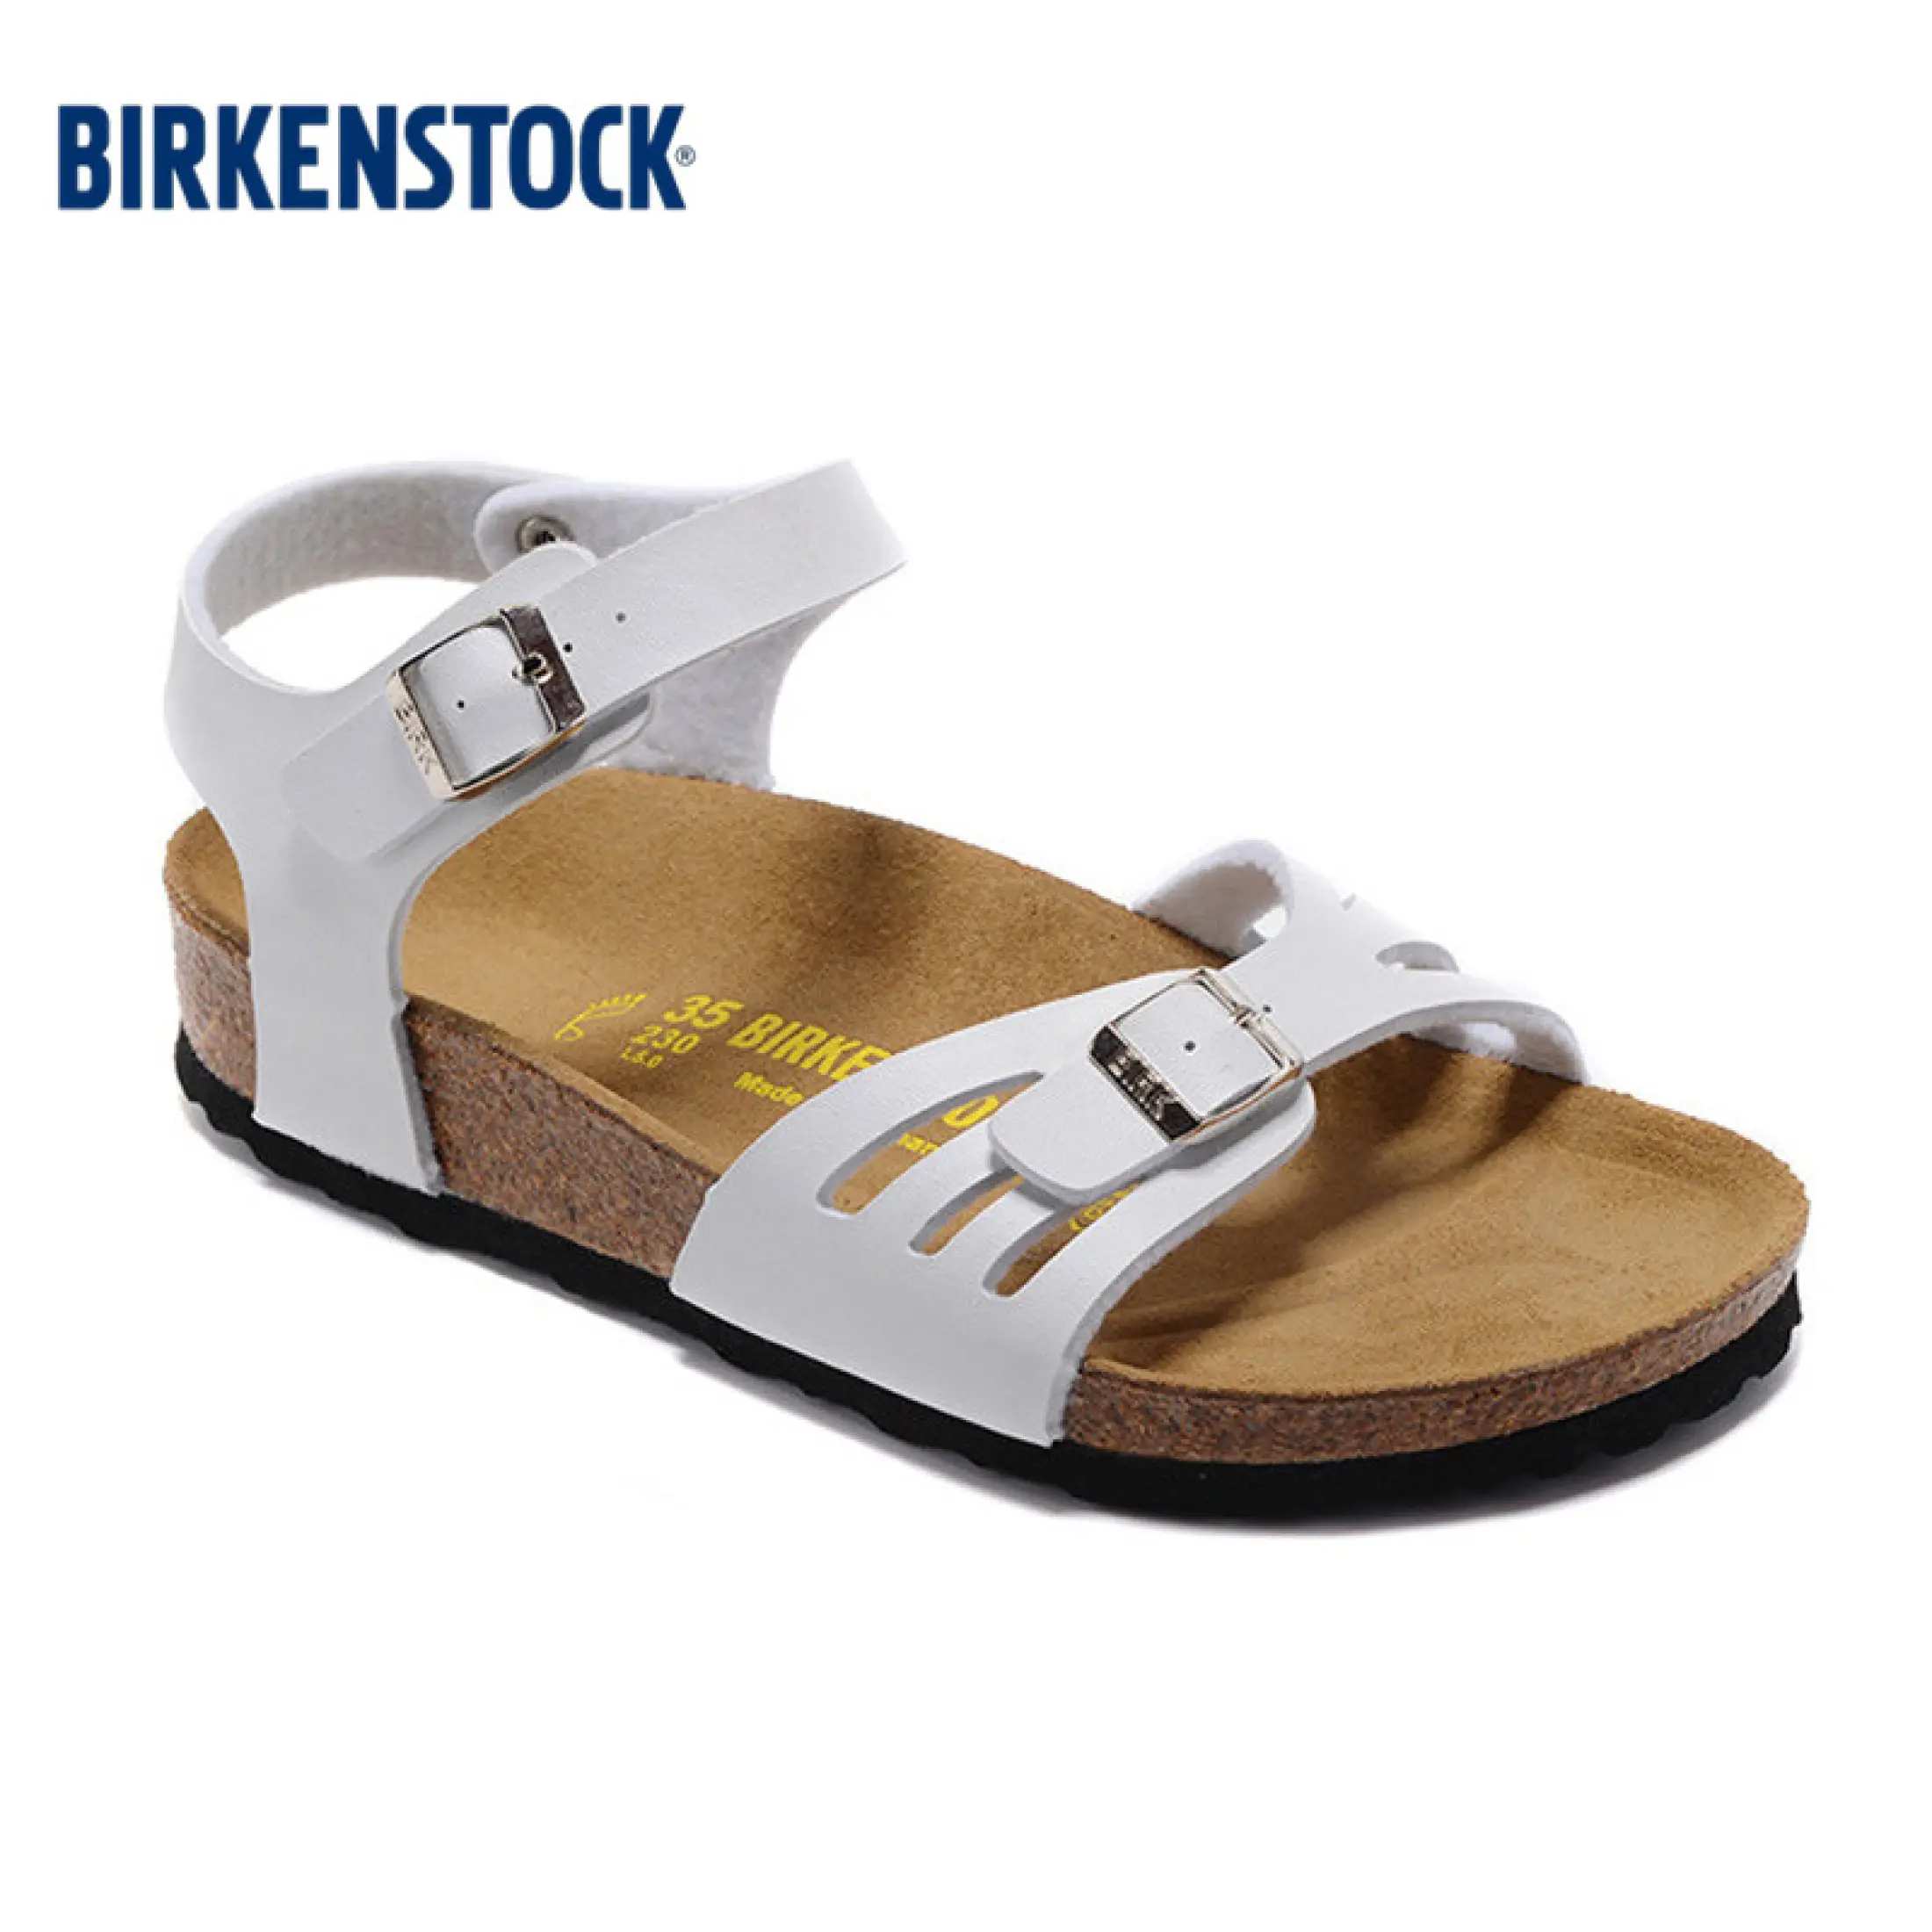 size 34 birkenstock sandals